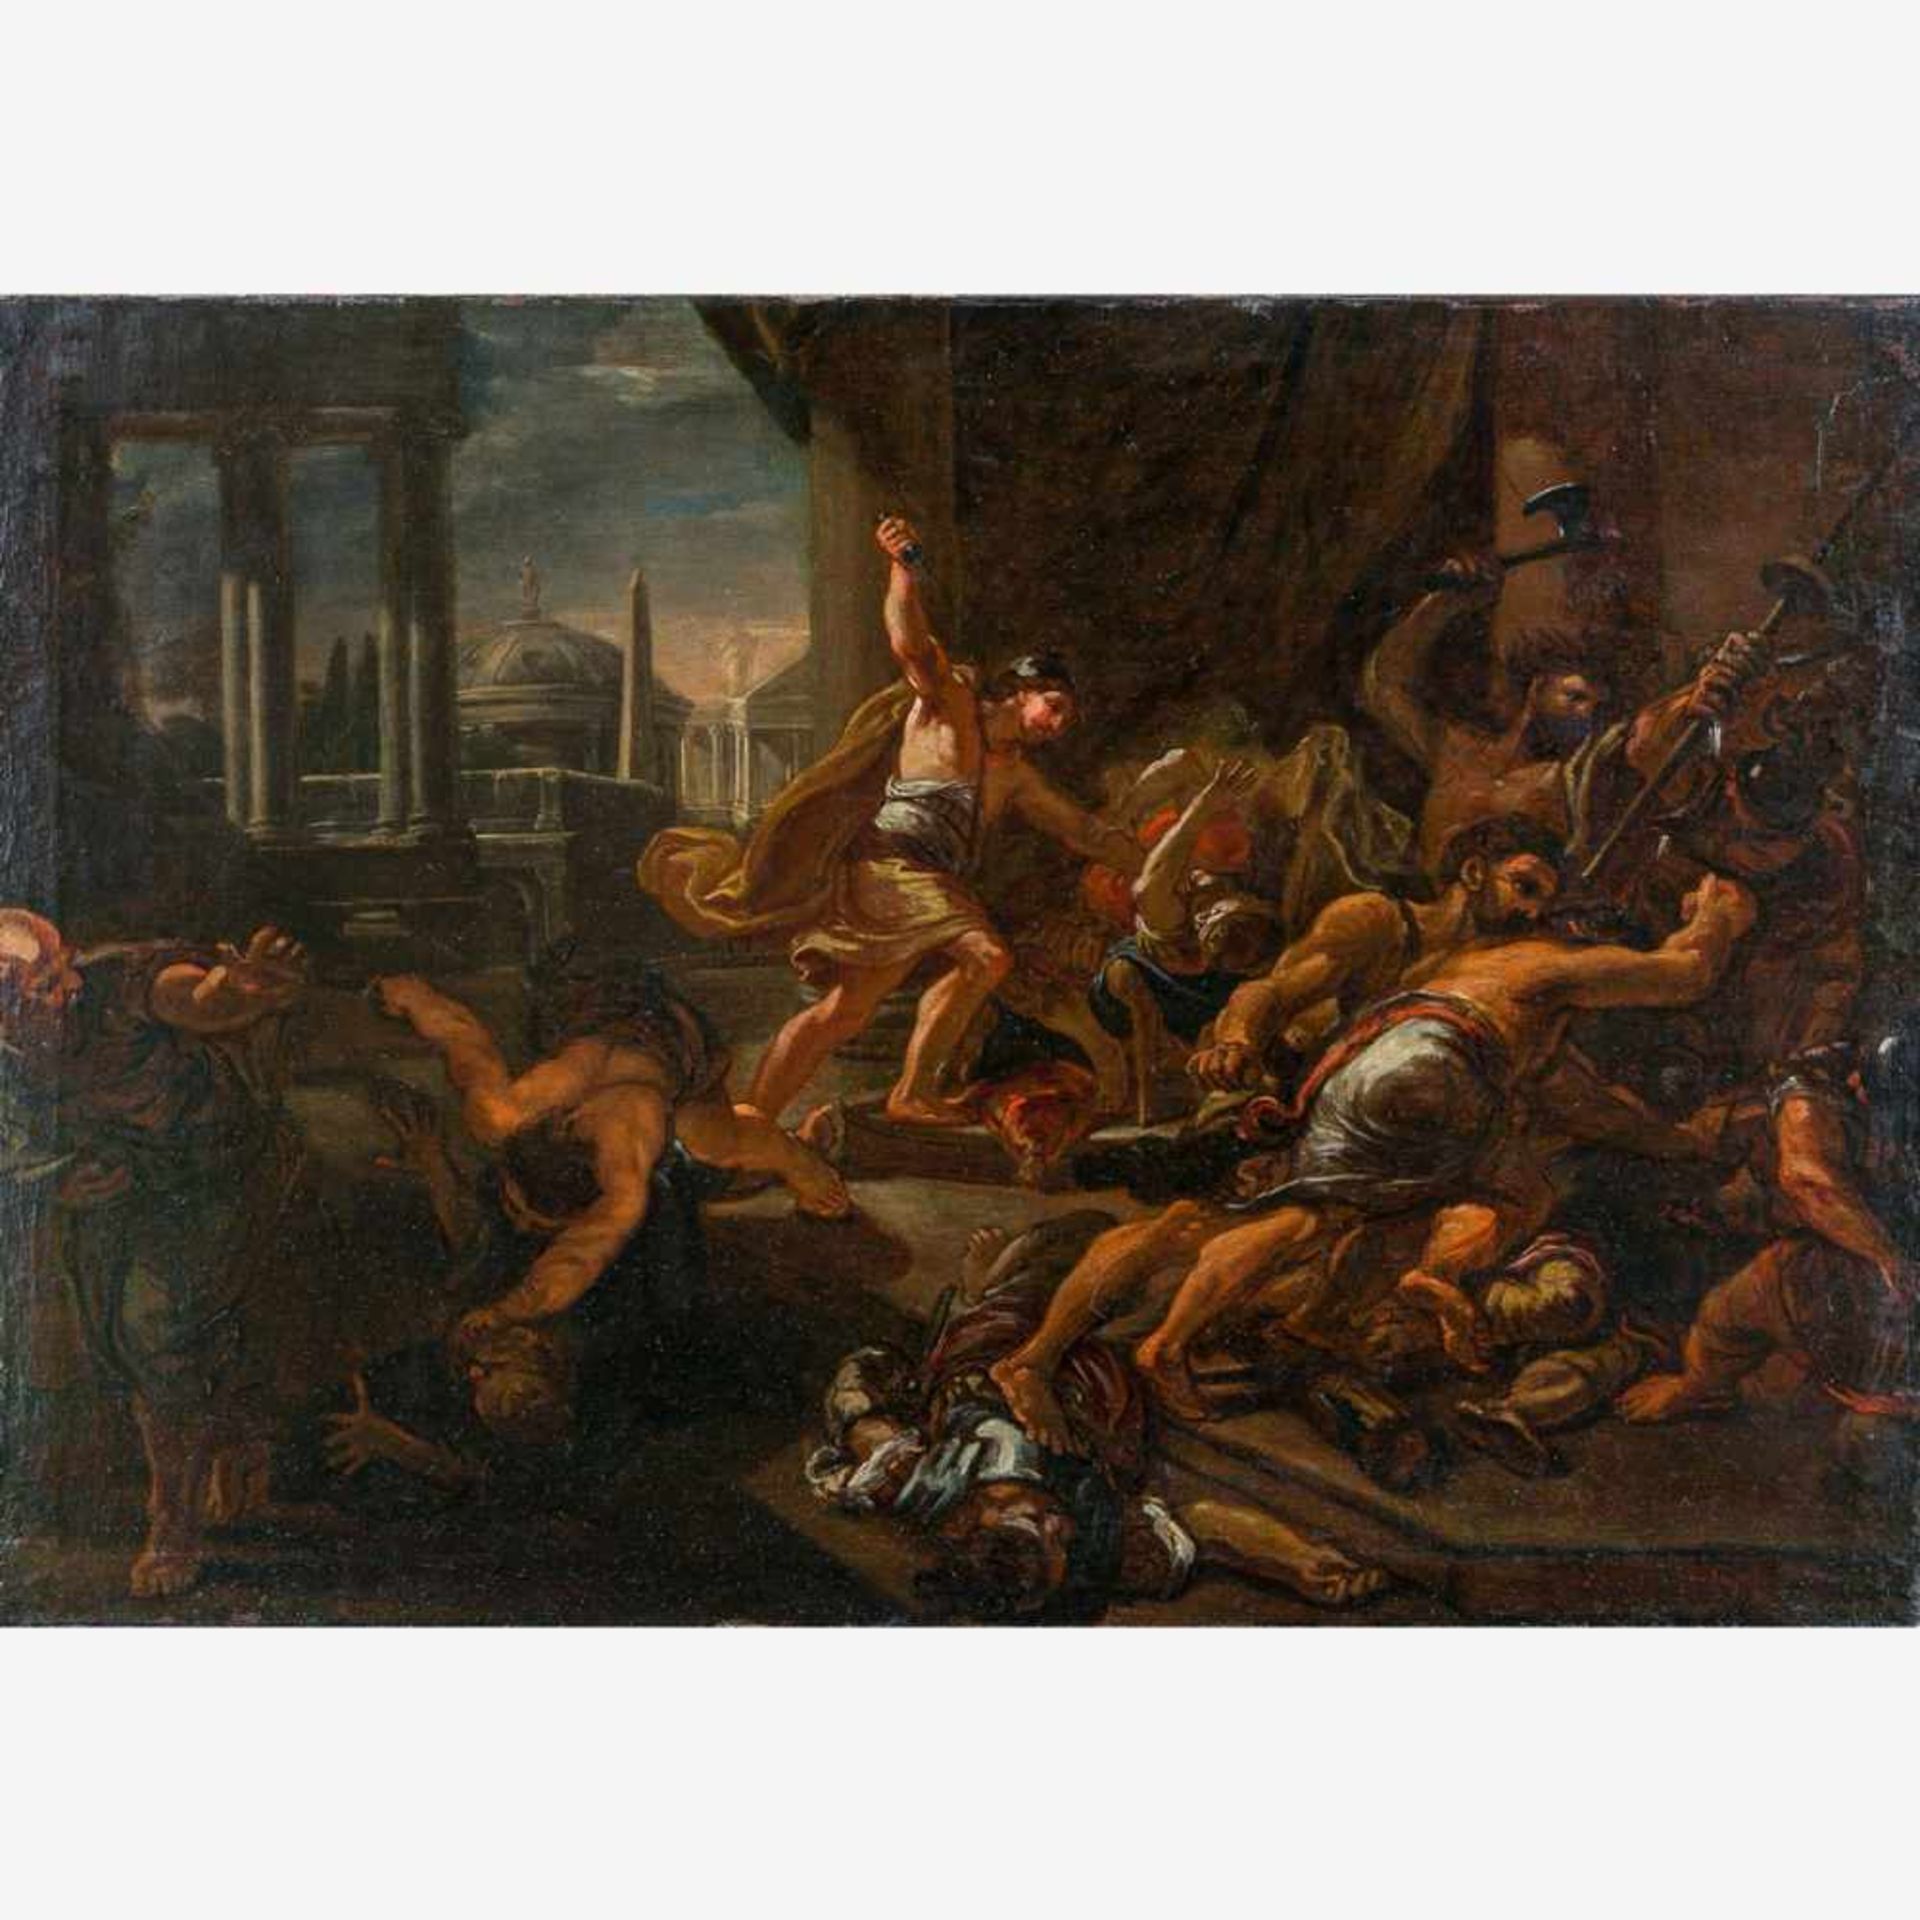 Unbekannter Maler (16. Jh.)Überfall der Barbaren auf römische SoldatenIm Hintergrund Forum Romanum